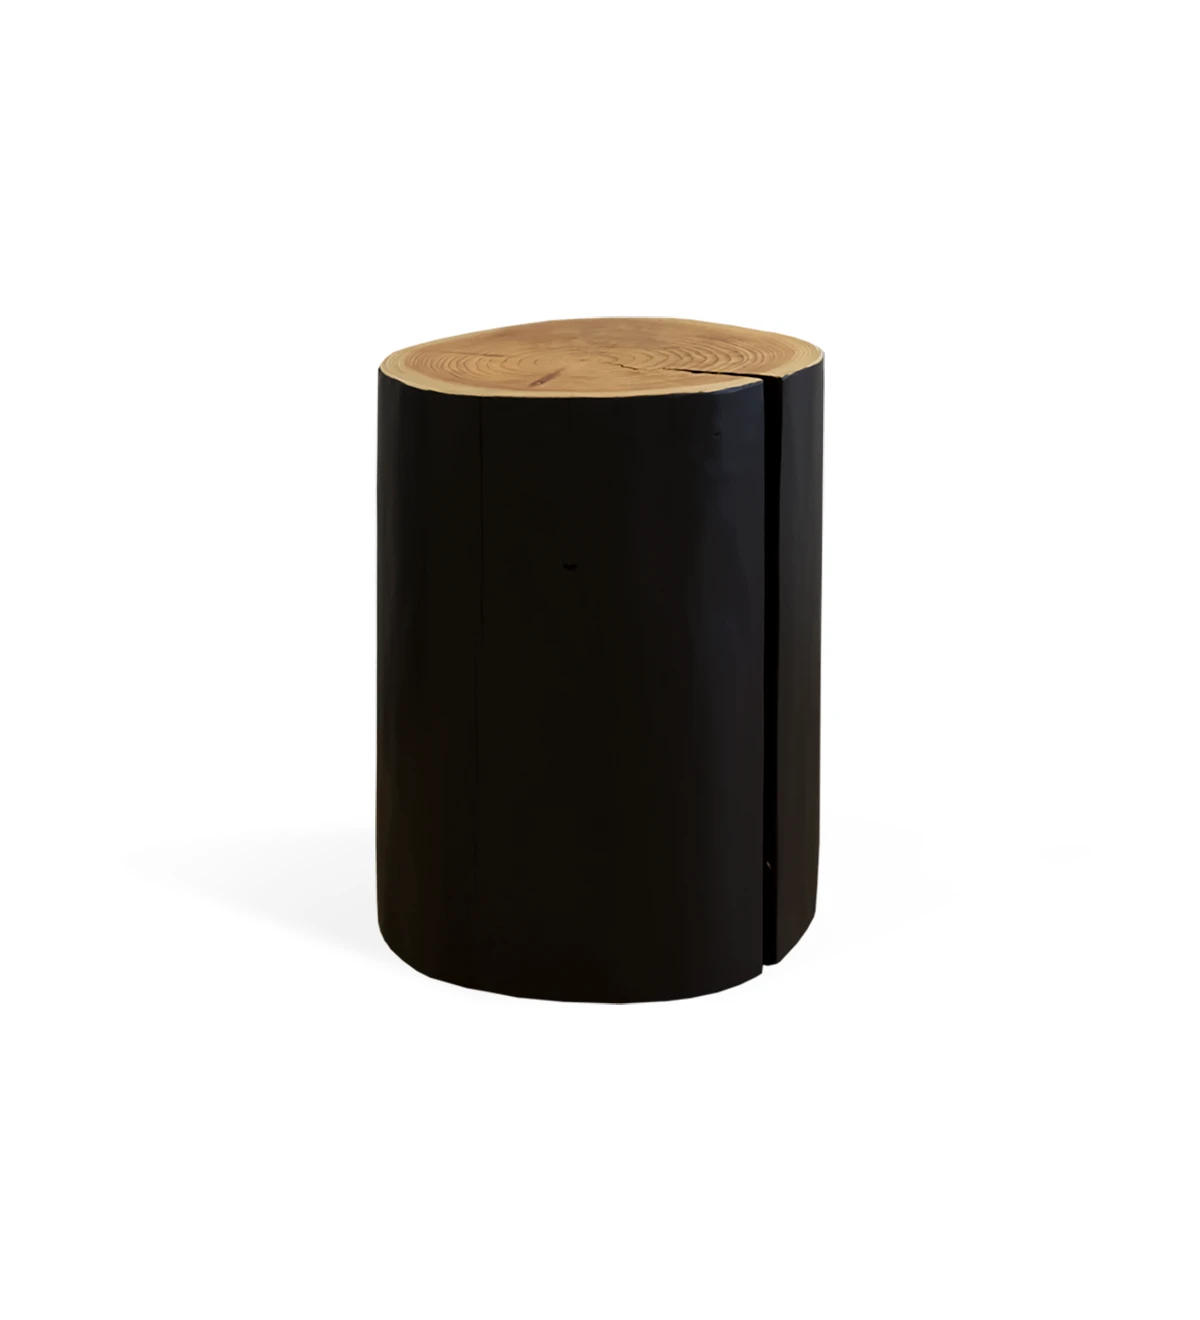 Table d'Appui Tronc en bois naturel de cryptoméria laqué noir, Ø 35 à 45 cm.